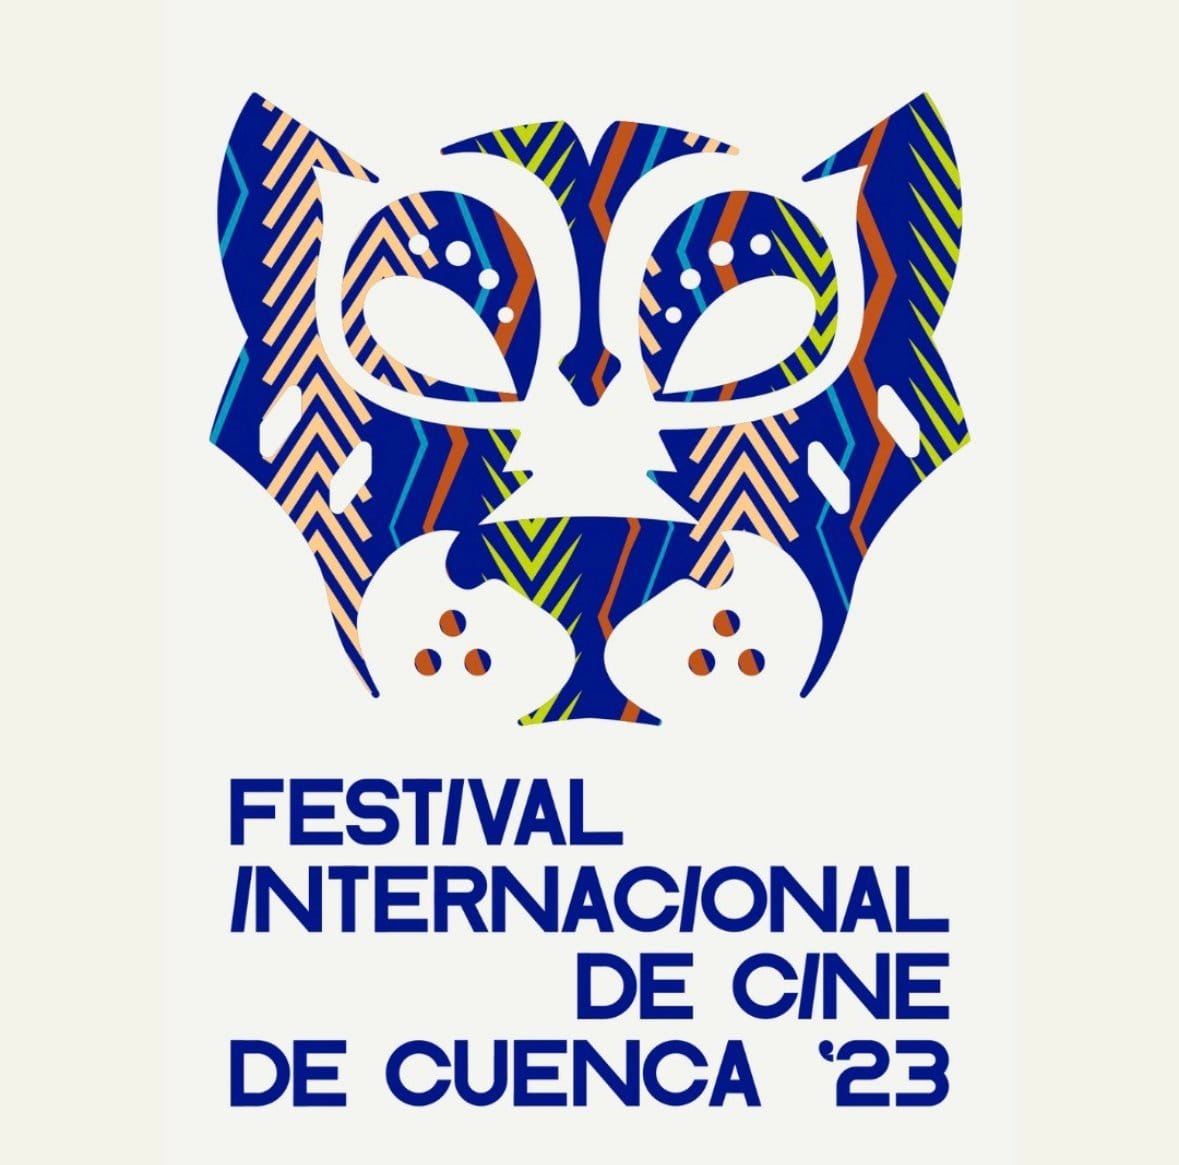 Ultraviolencia seleccionado en el Festival Internacional de Cine de Cuenca